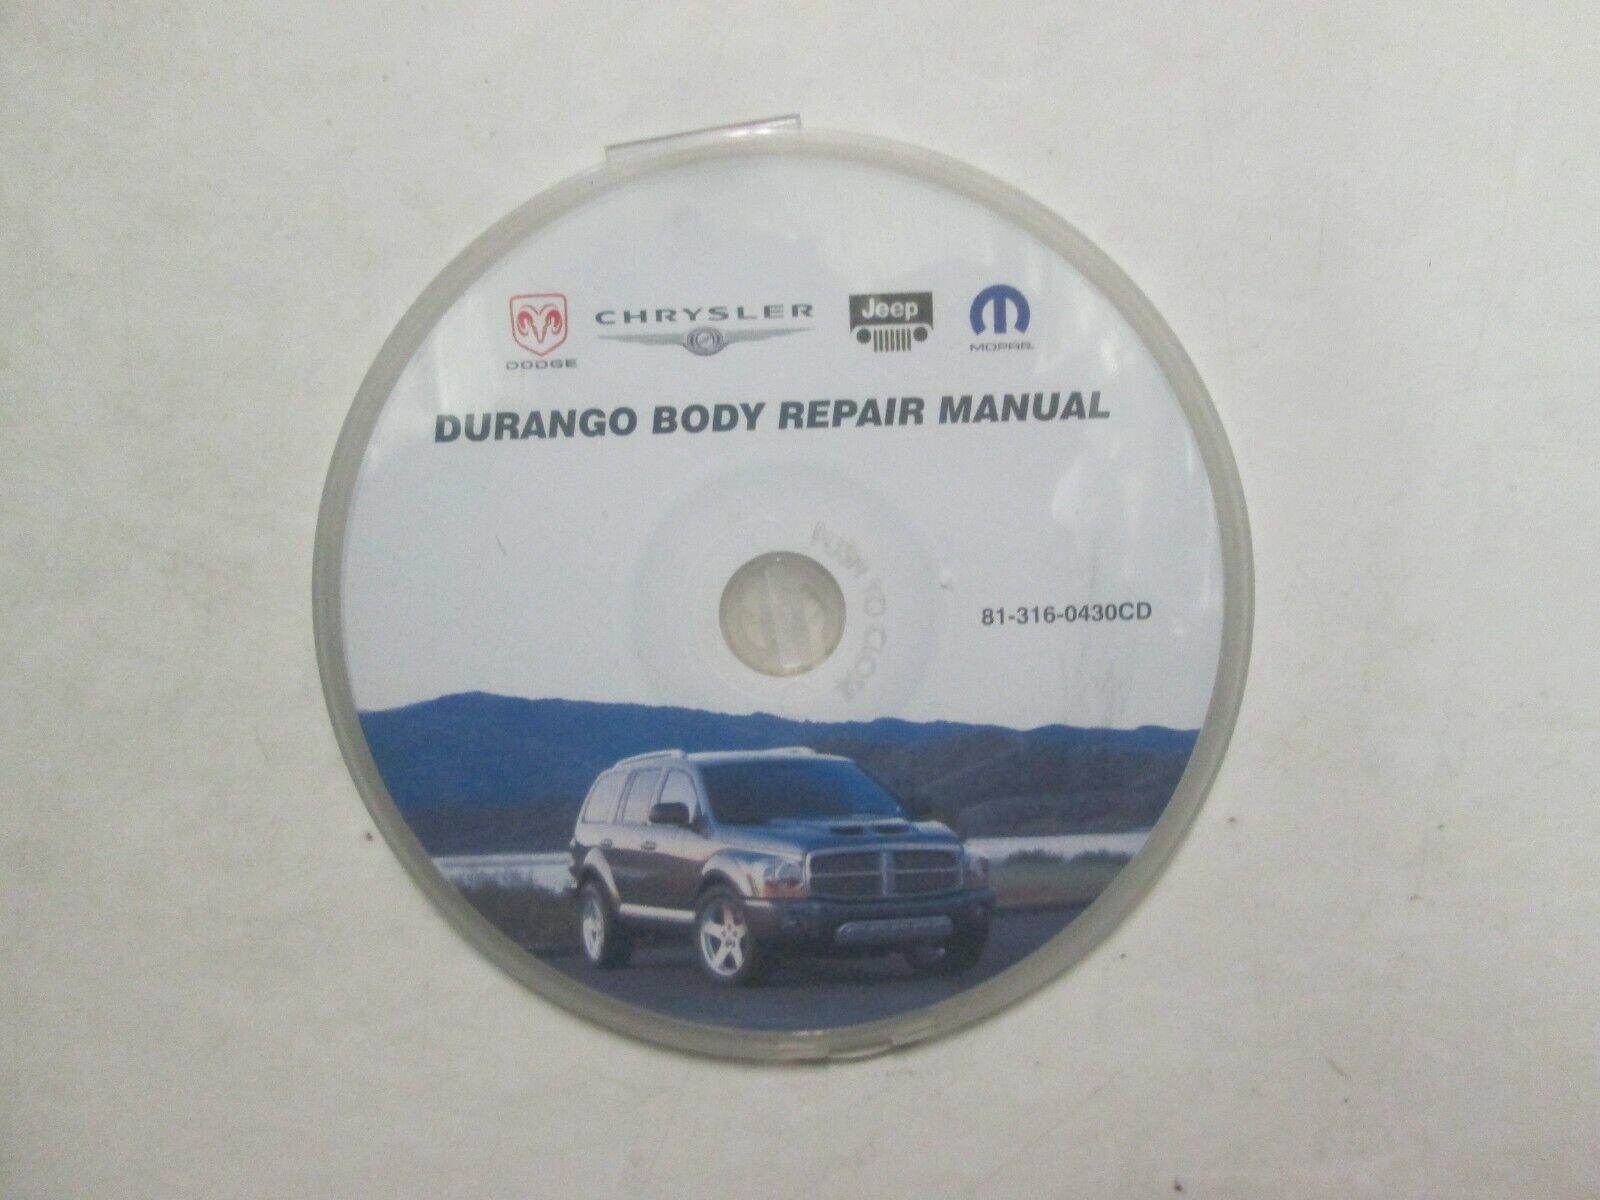 Dodge Durango Body Repair Service Manual CD 81-316-0430CD FACTORY OEM - $60.13